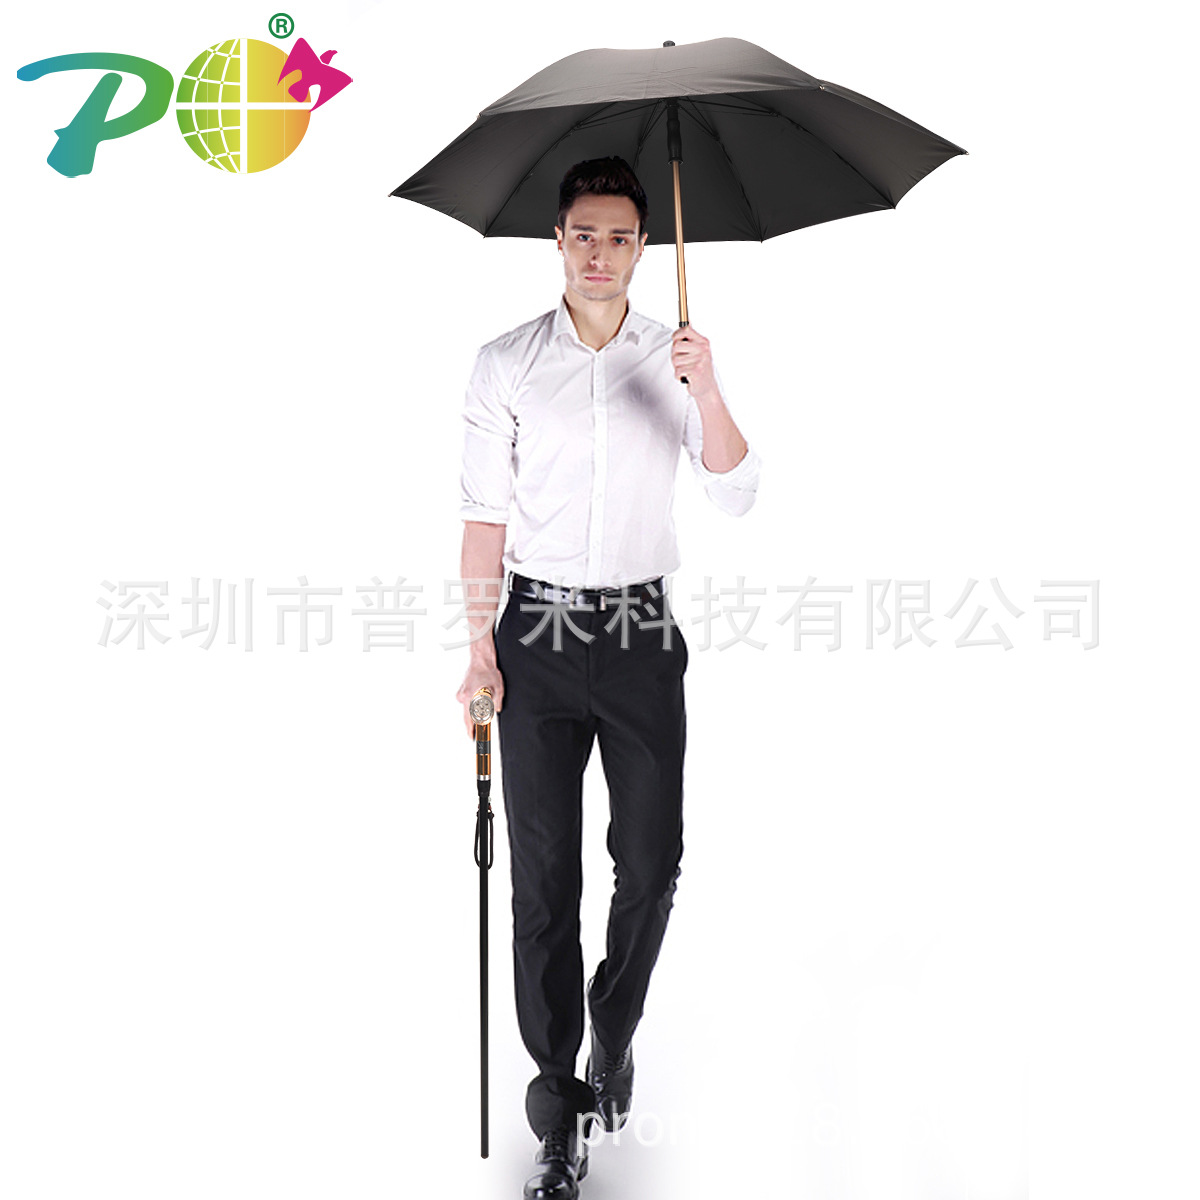 遇险报警 家人的保护伞智能拐杖雨伞一伞多用 手摇发电拐杖雨伞